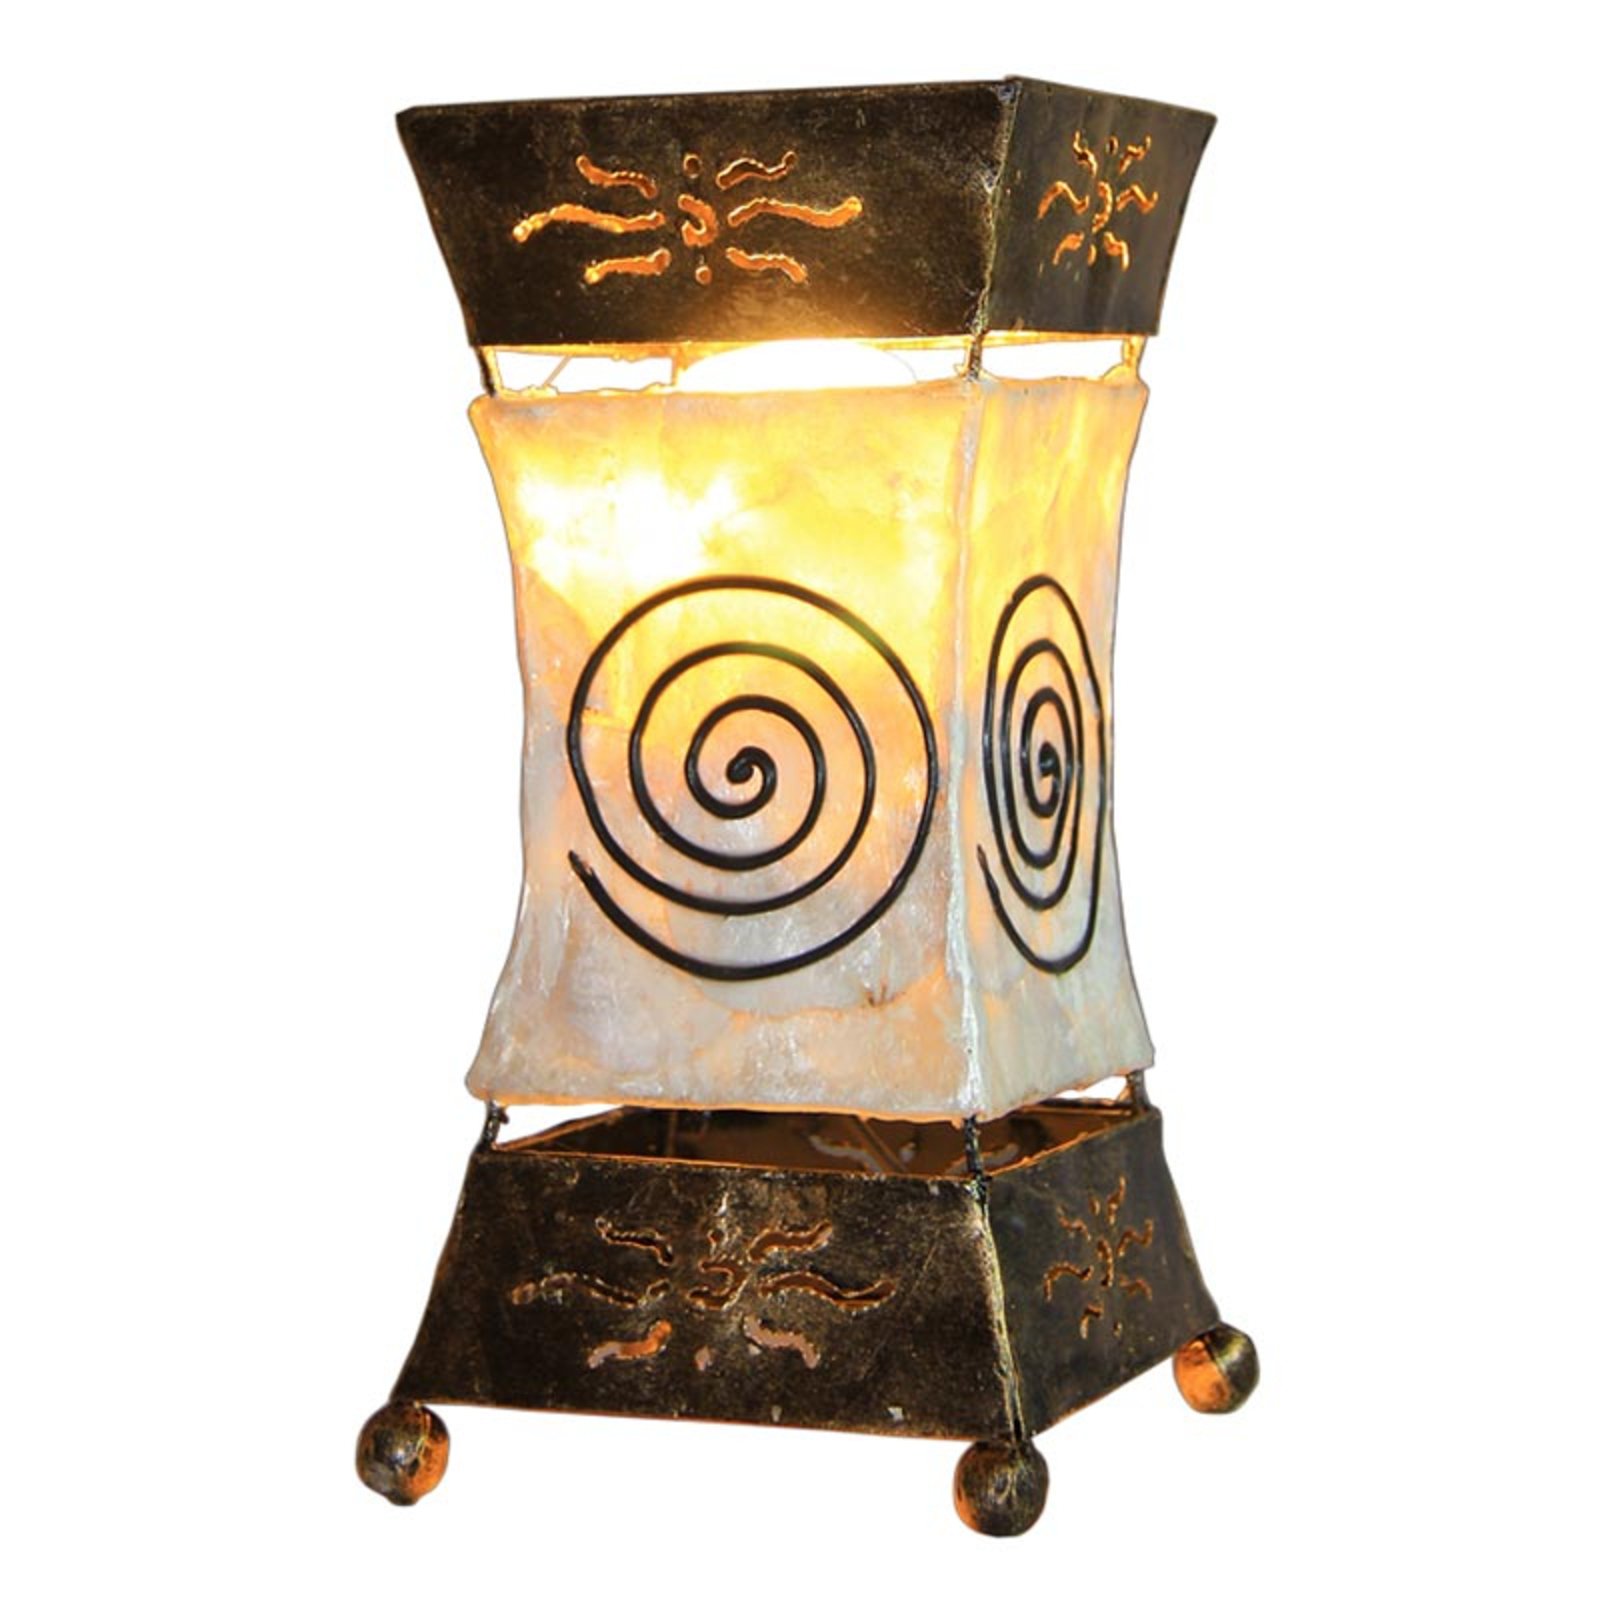 Bright Xenia stolna lampa sa spiralnim motivom